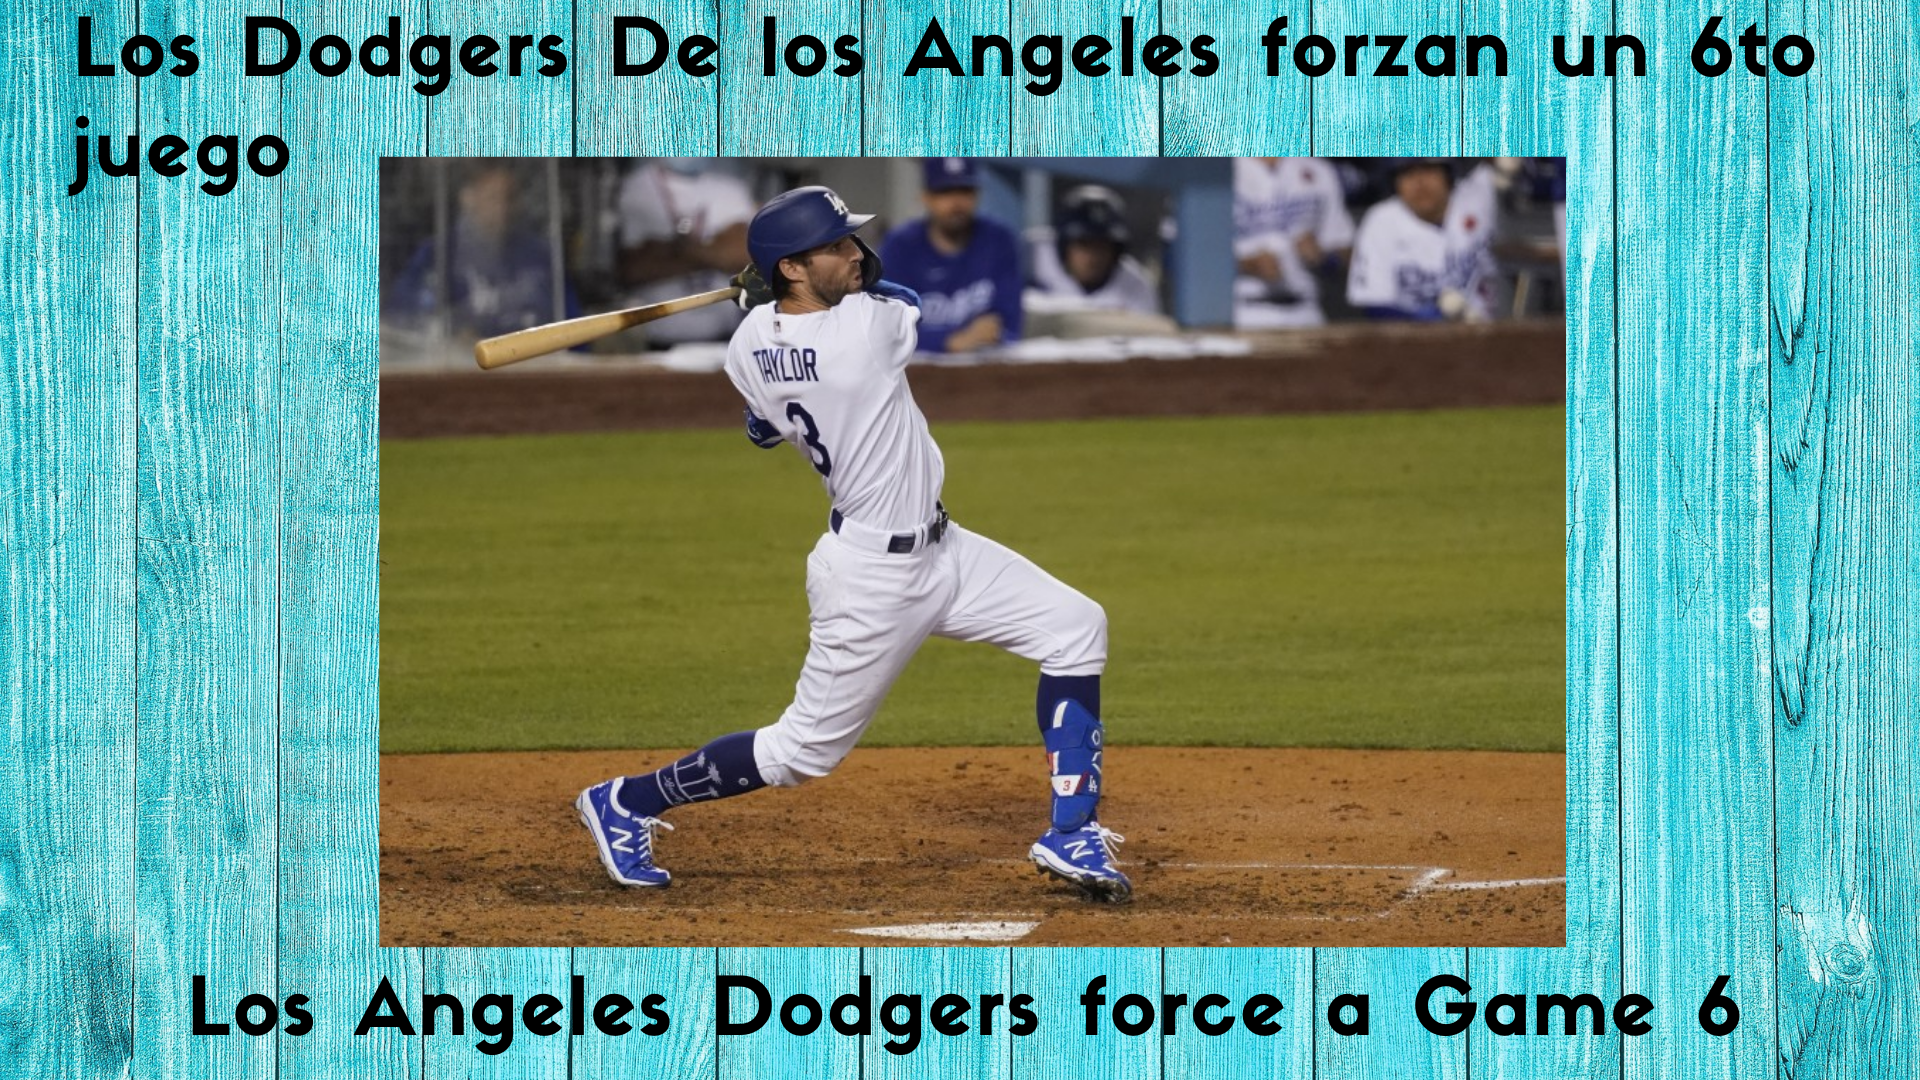 Los Dodgers De los Angeles forzan un 6to juego  ✯  Los Angeles Dodgers force a Game 6.png